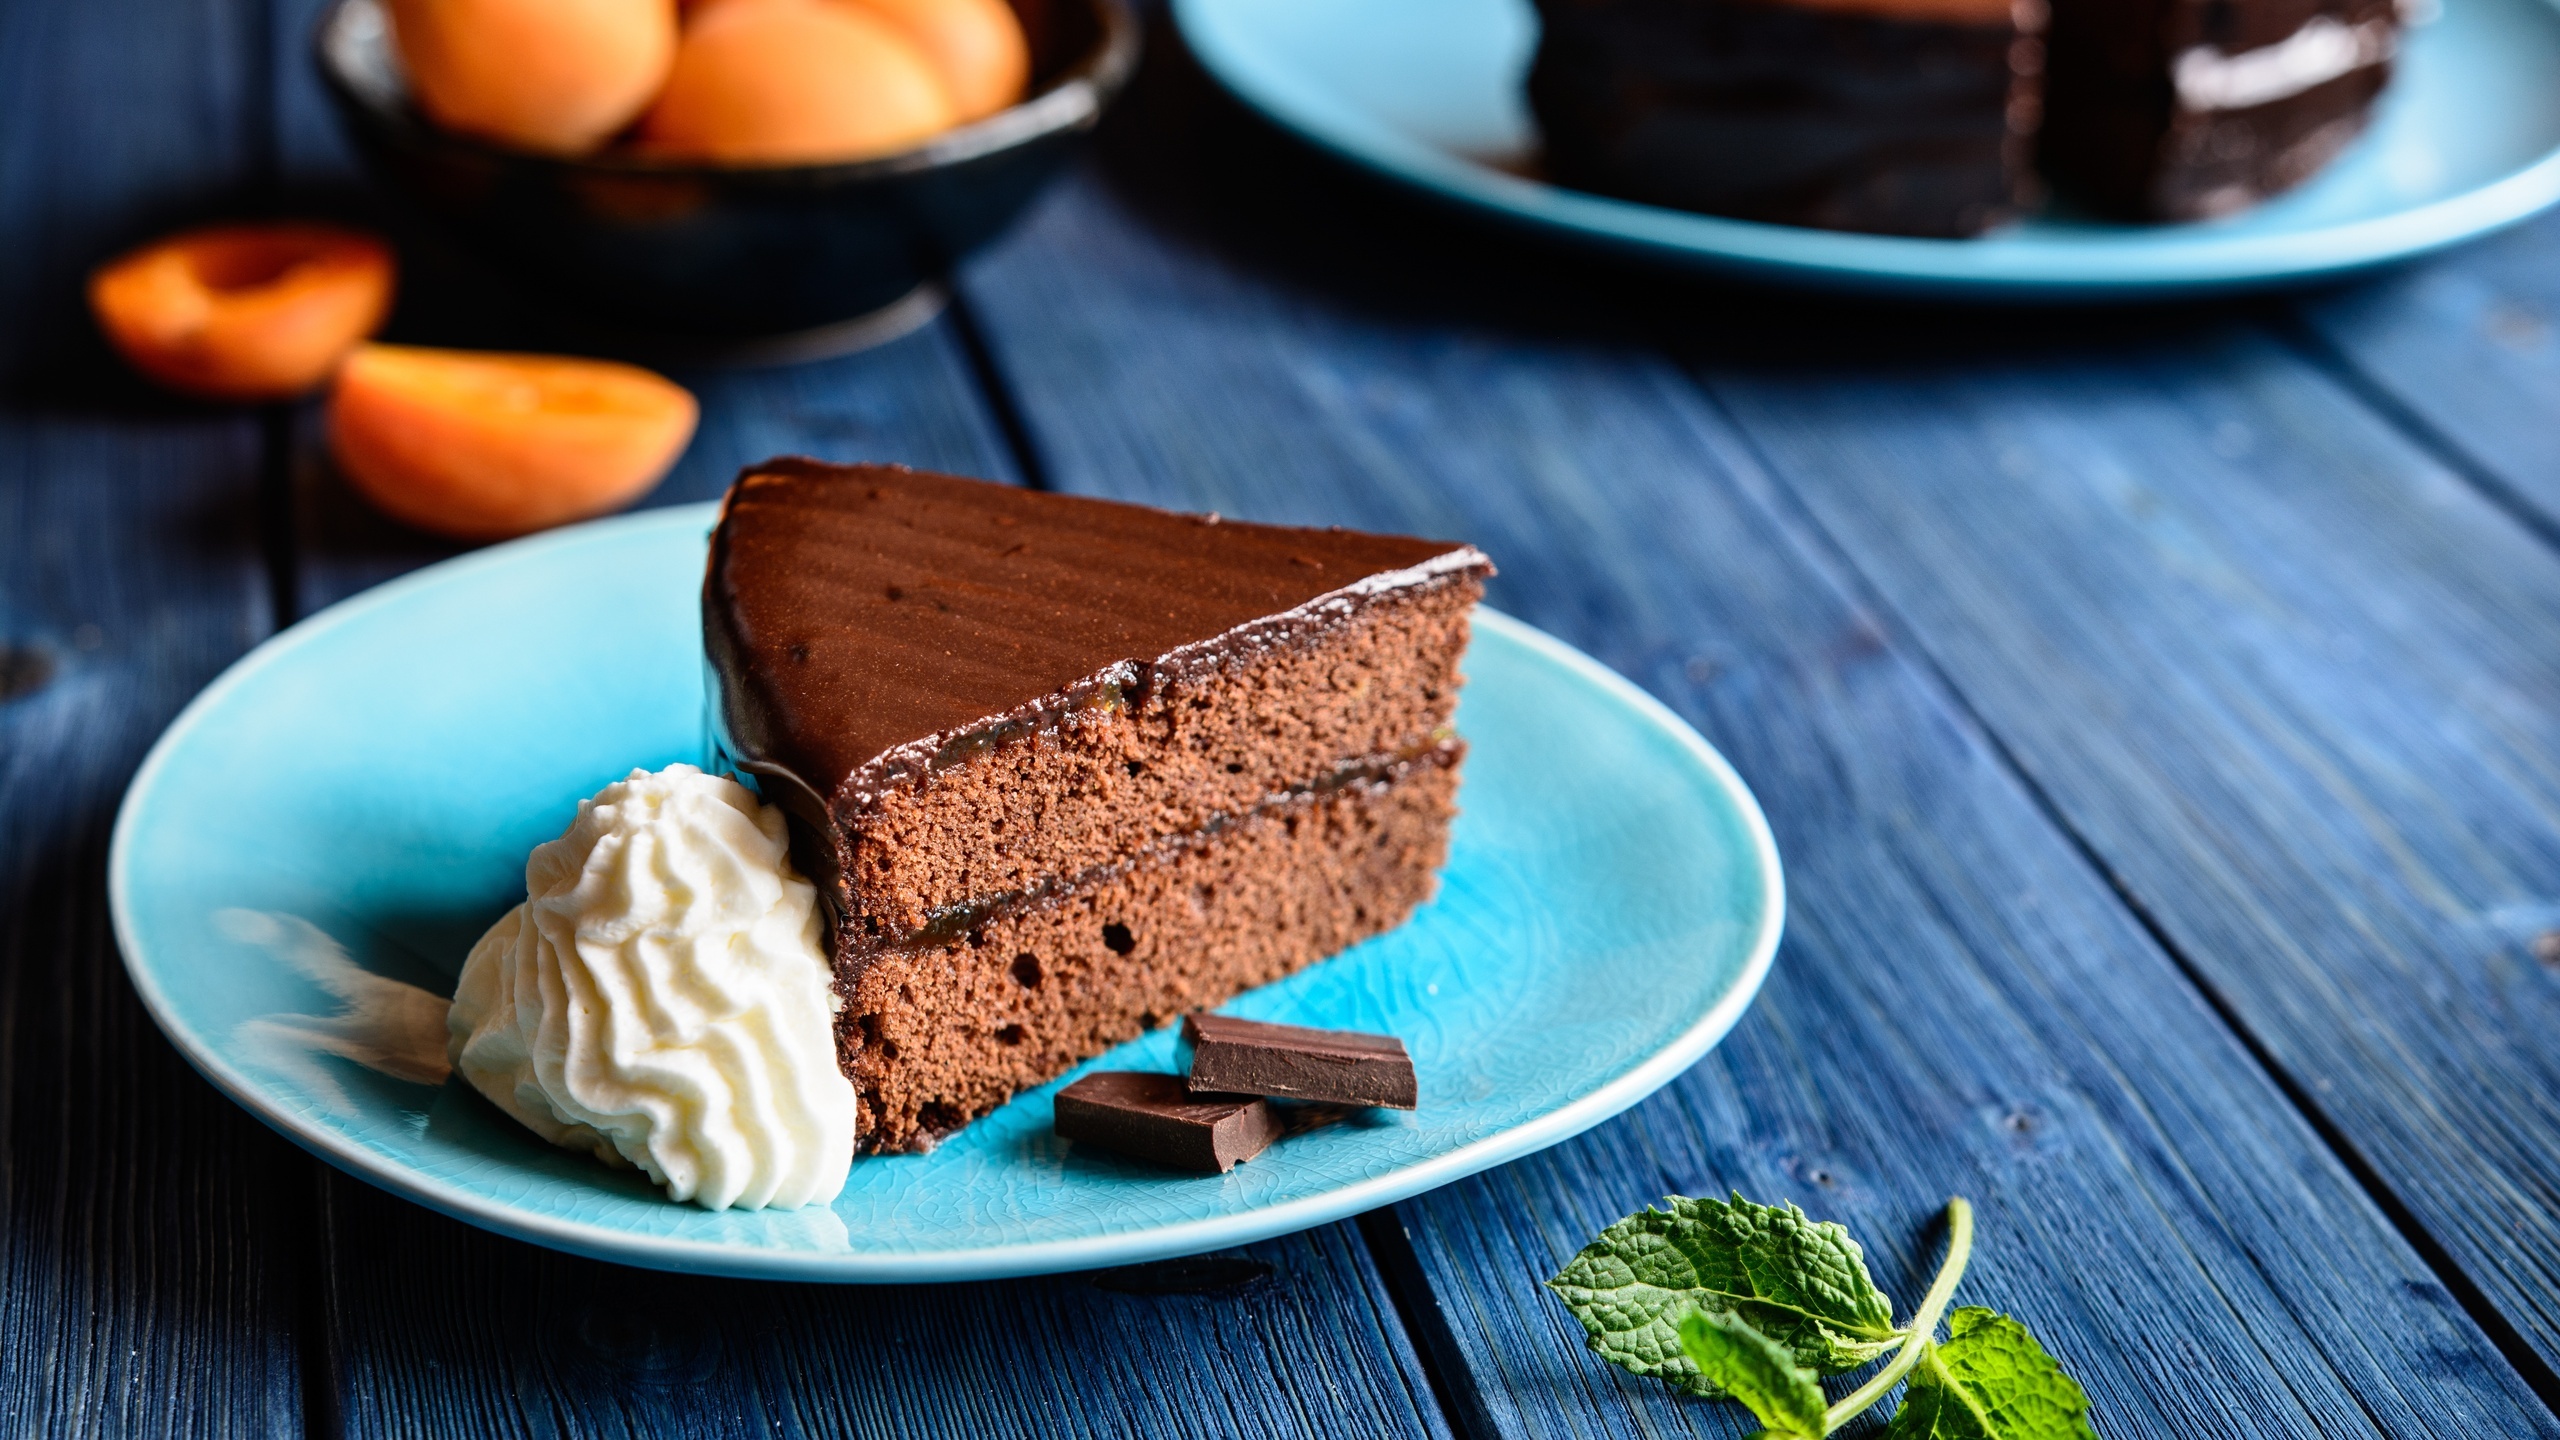 Decadent chocolate cake, Fluffy pastry, Indulgent dessert, Rich flavor, 2560x1440 HD Desktop